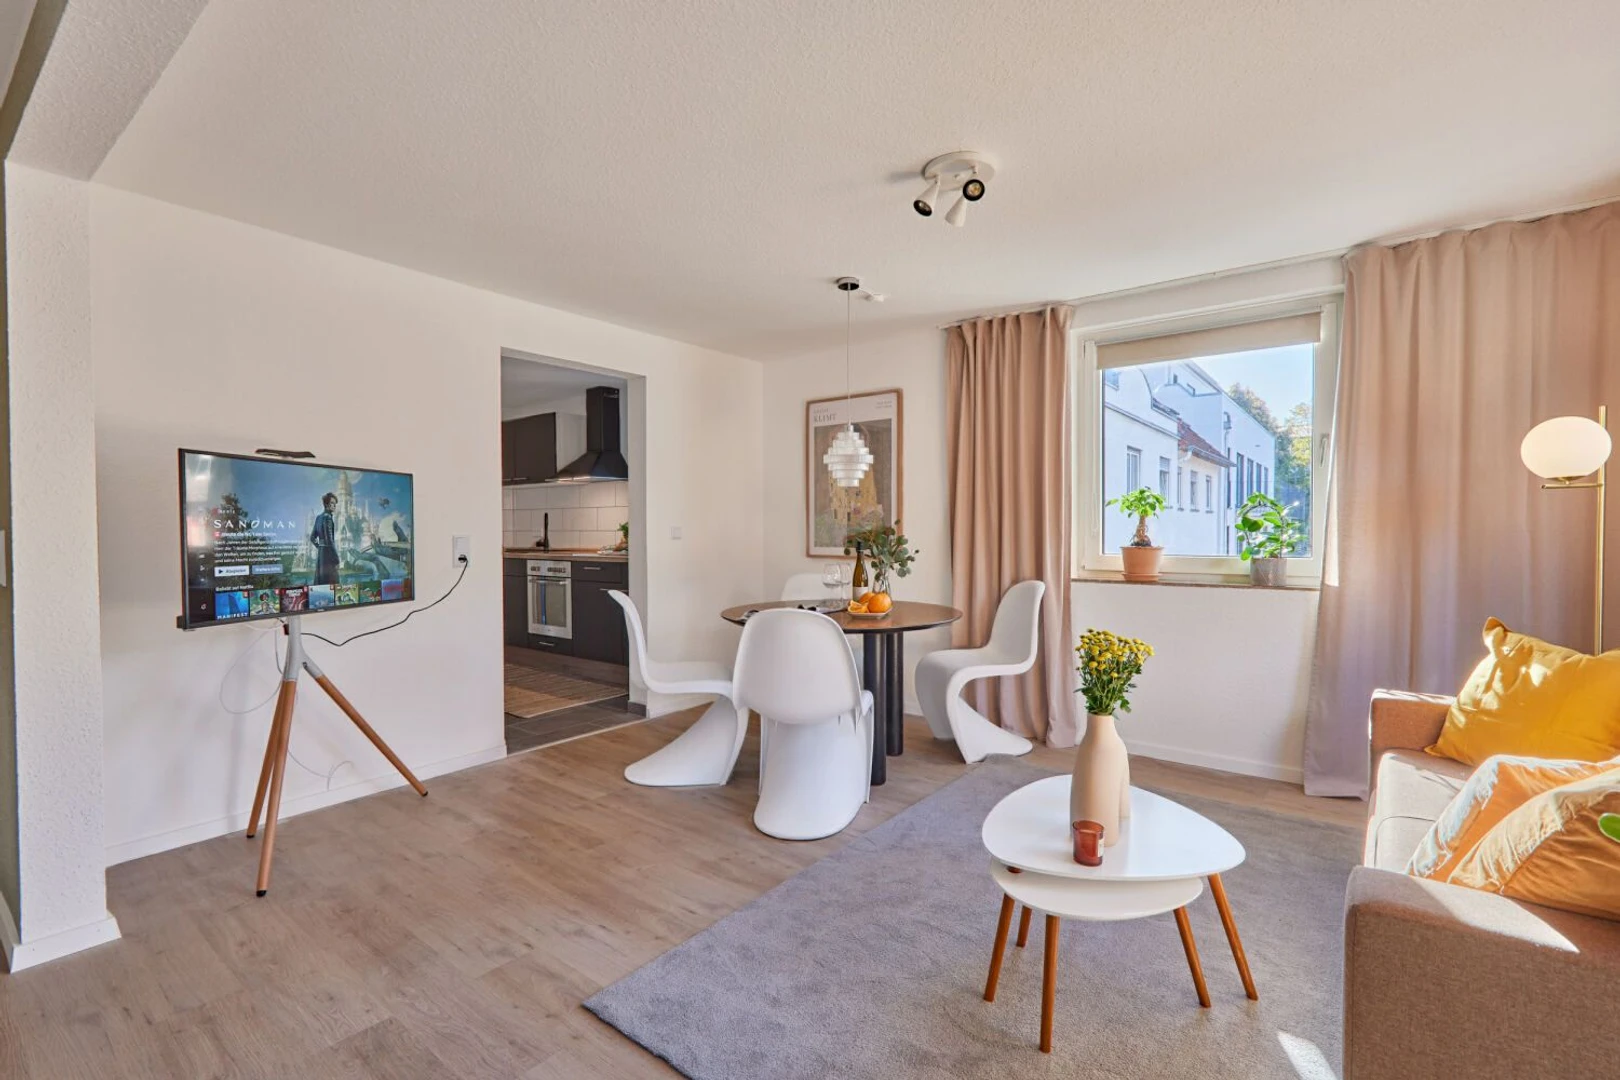 Alquiler de habitaciones por meses en Kaiserslautern